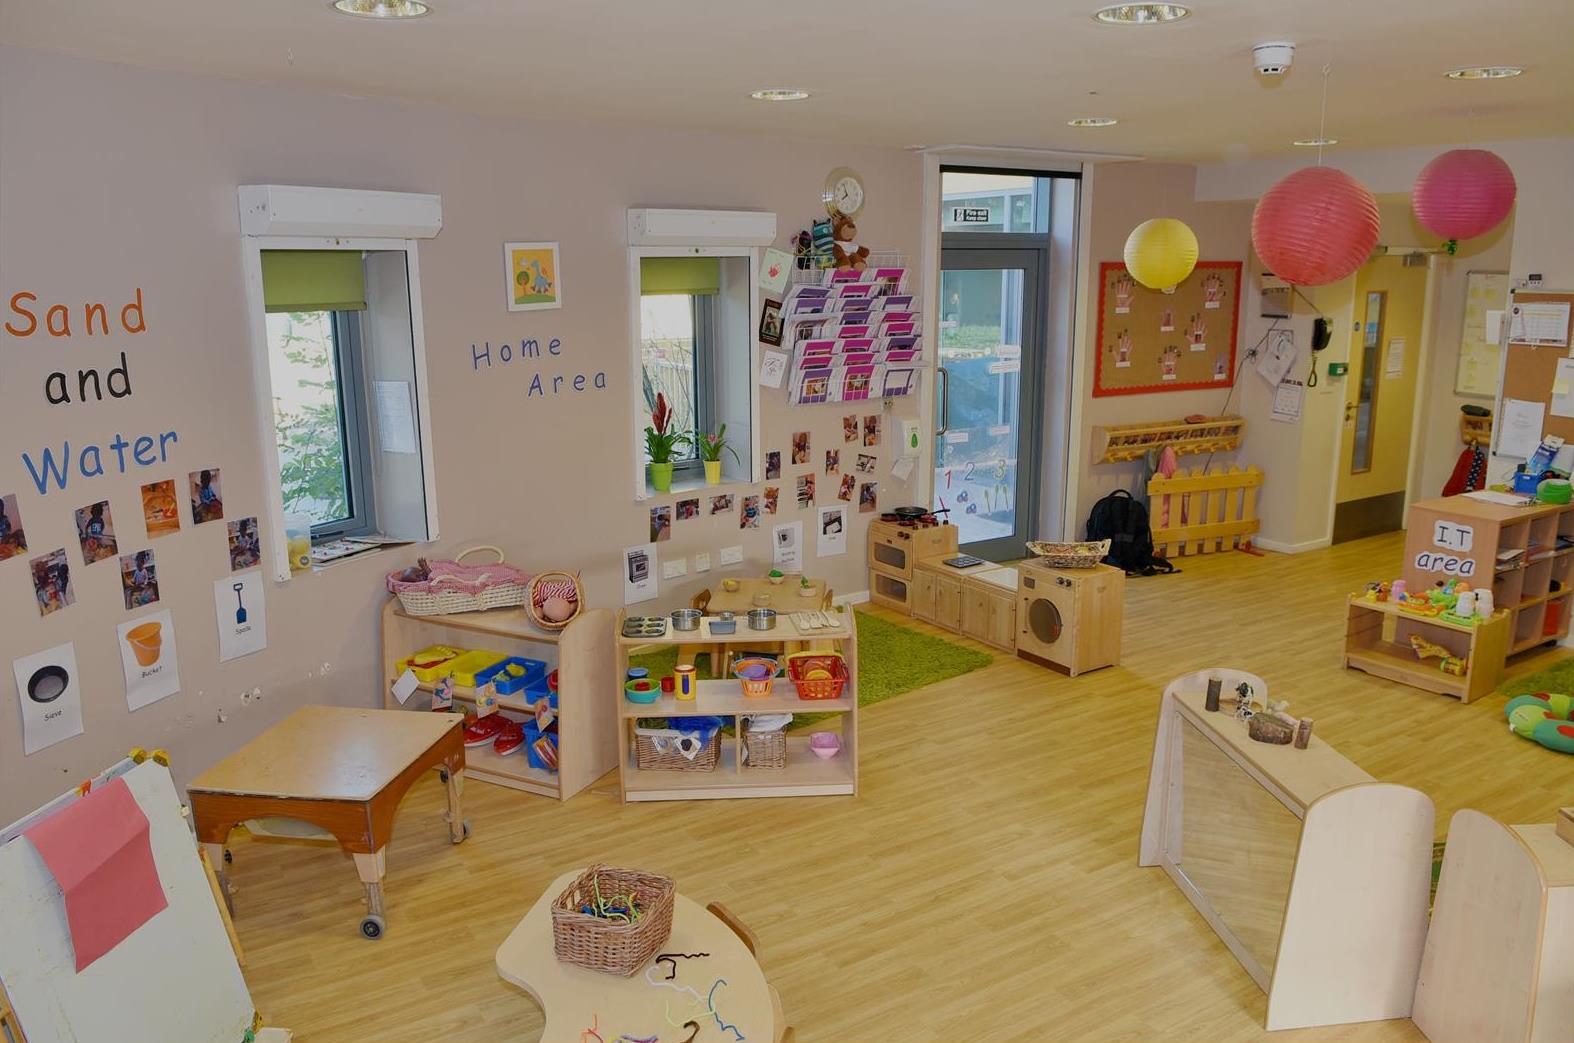 Bright Horizons Trafford Nursery and Preschool Old Trafford 03334 551321